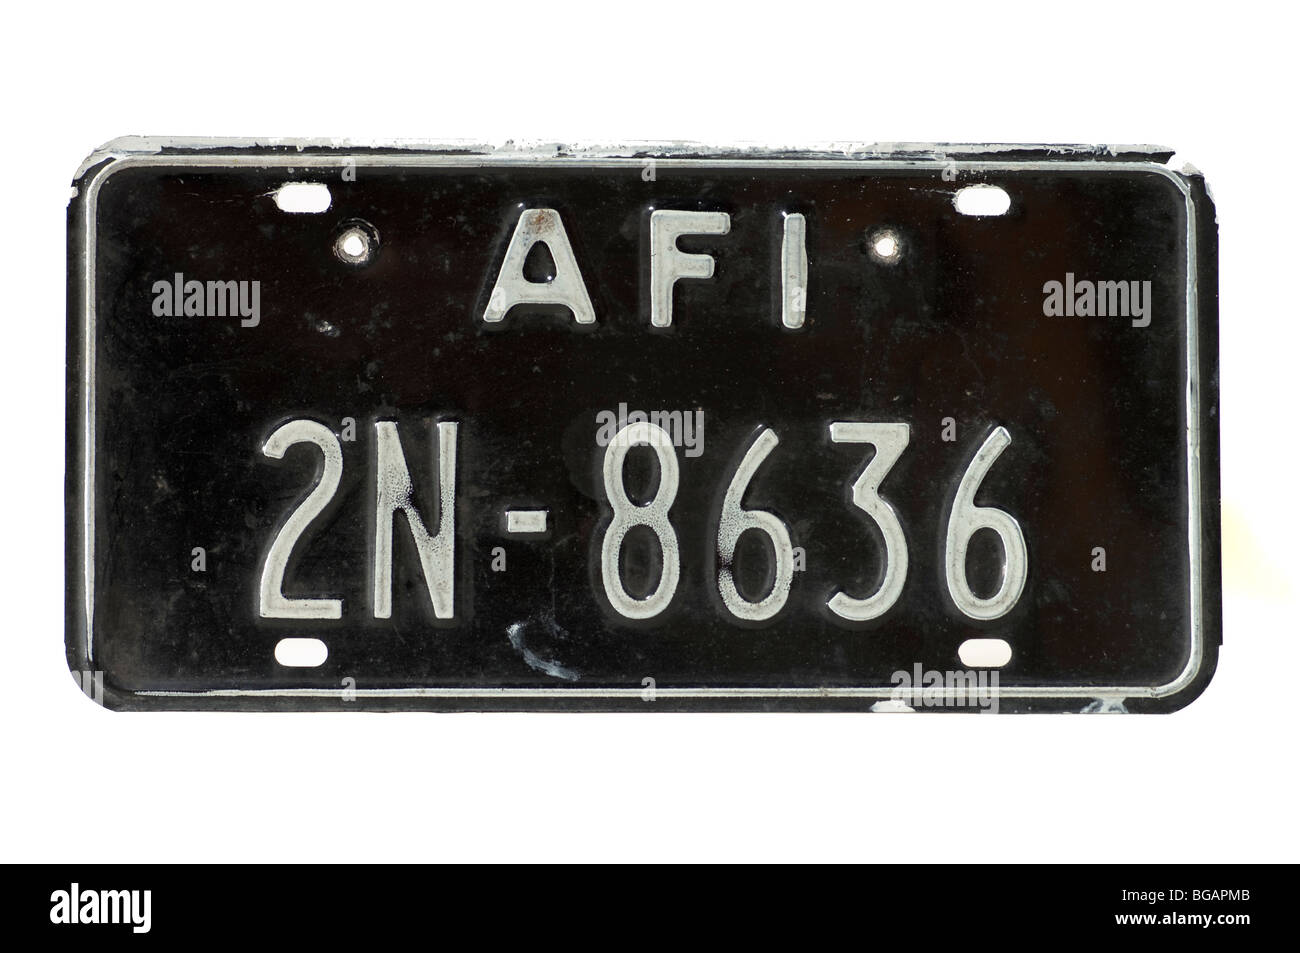 Rare voiture étrangère numéro d'enregistrement émis en plaque à Naples dans les années 1980, le personnel de l'OTAN Banque D'Images